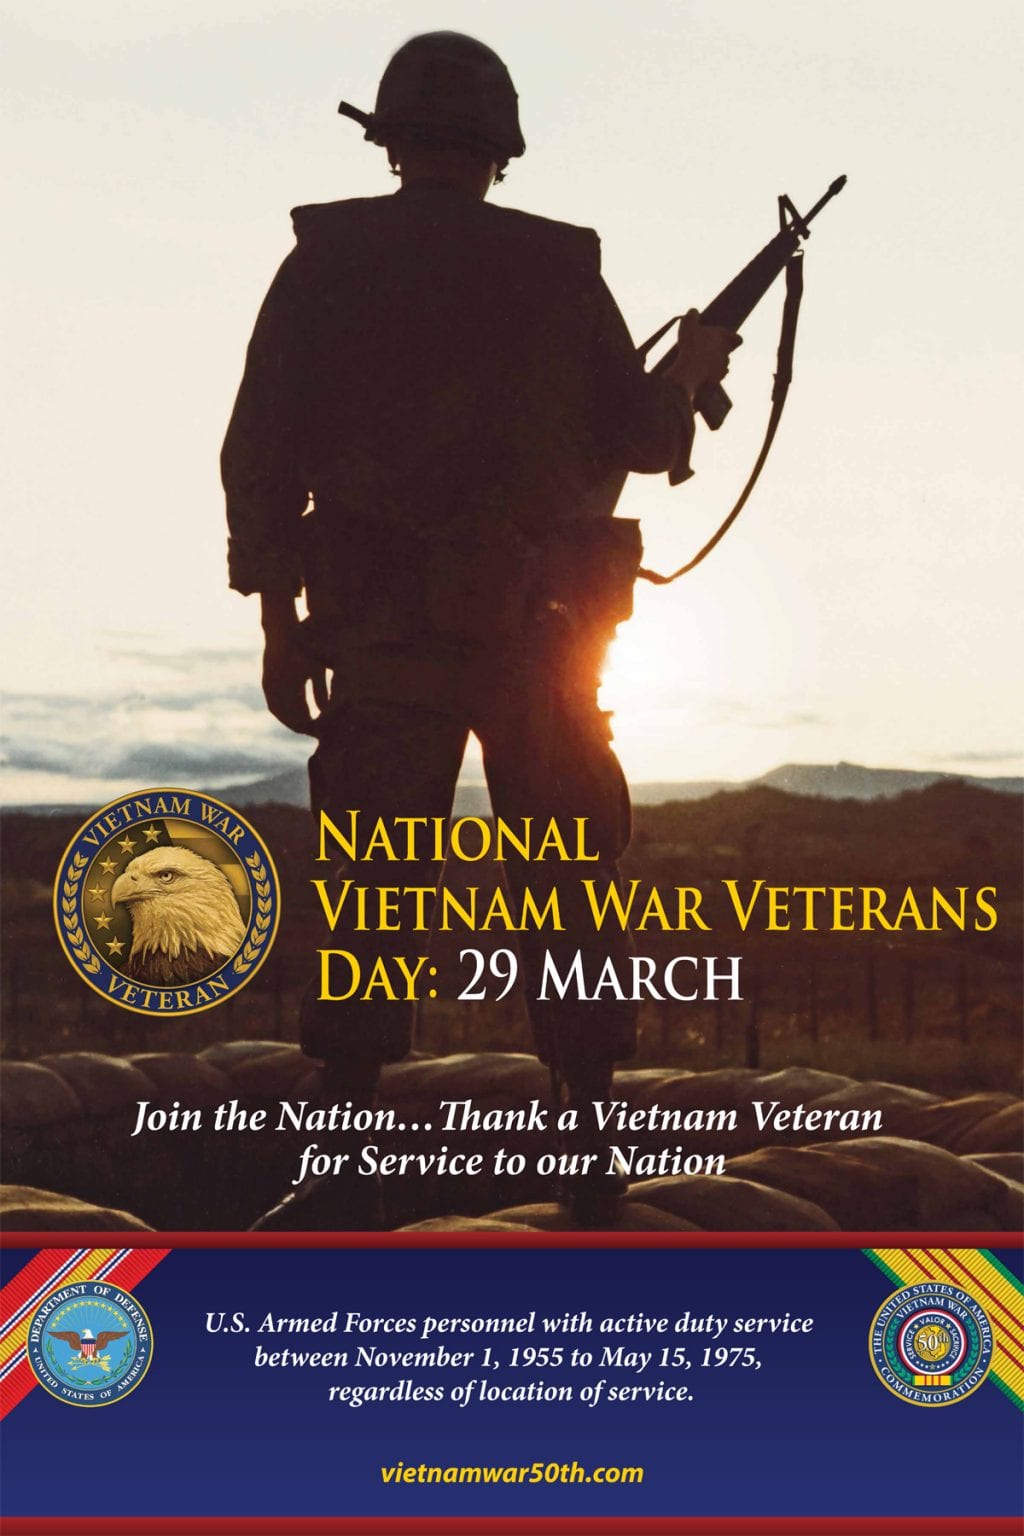 National Vietnam War Veterans Day, March 29 Featured